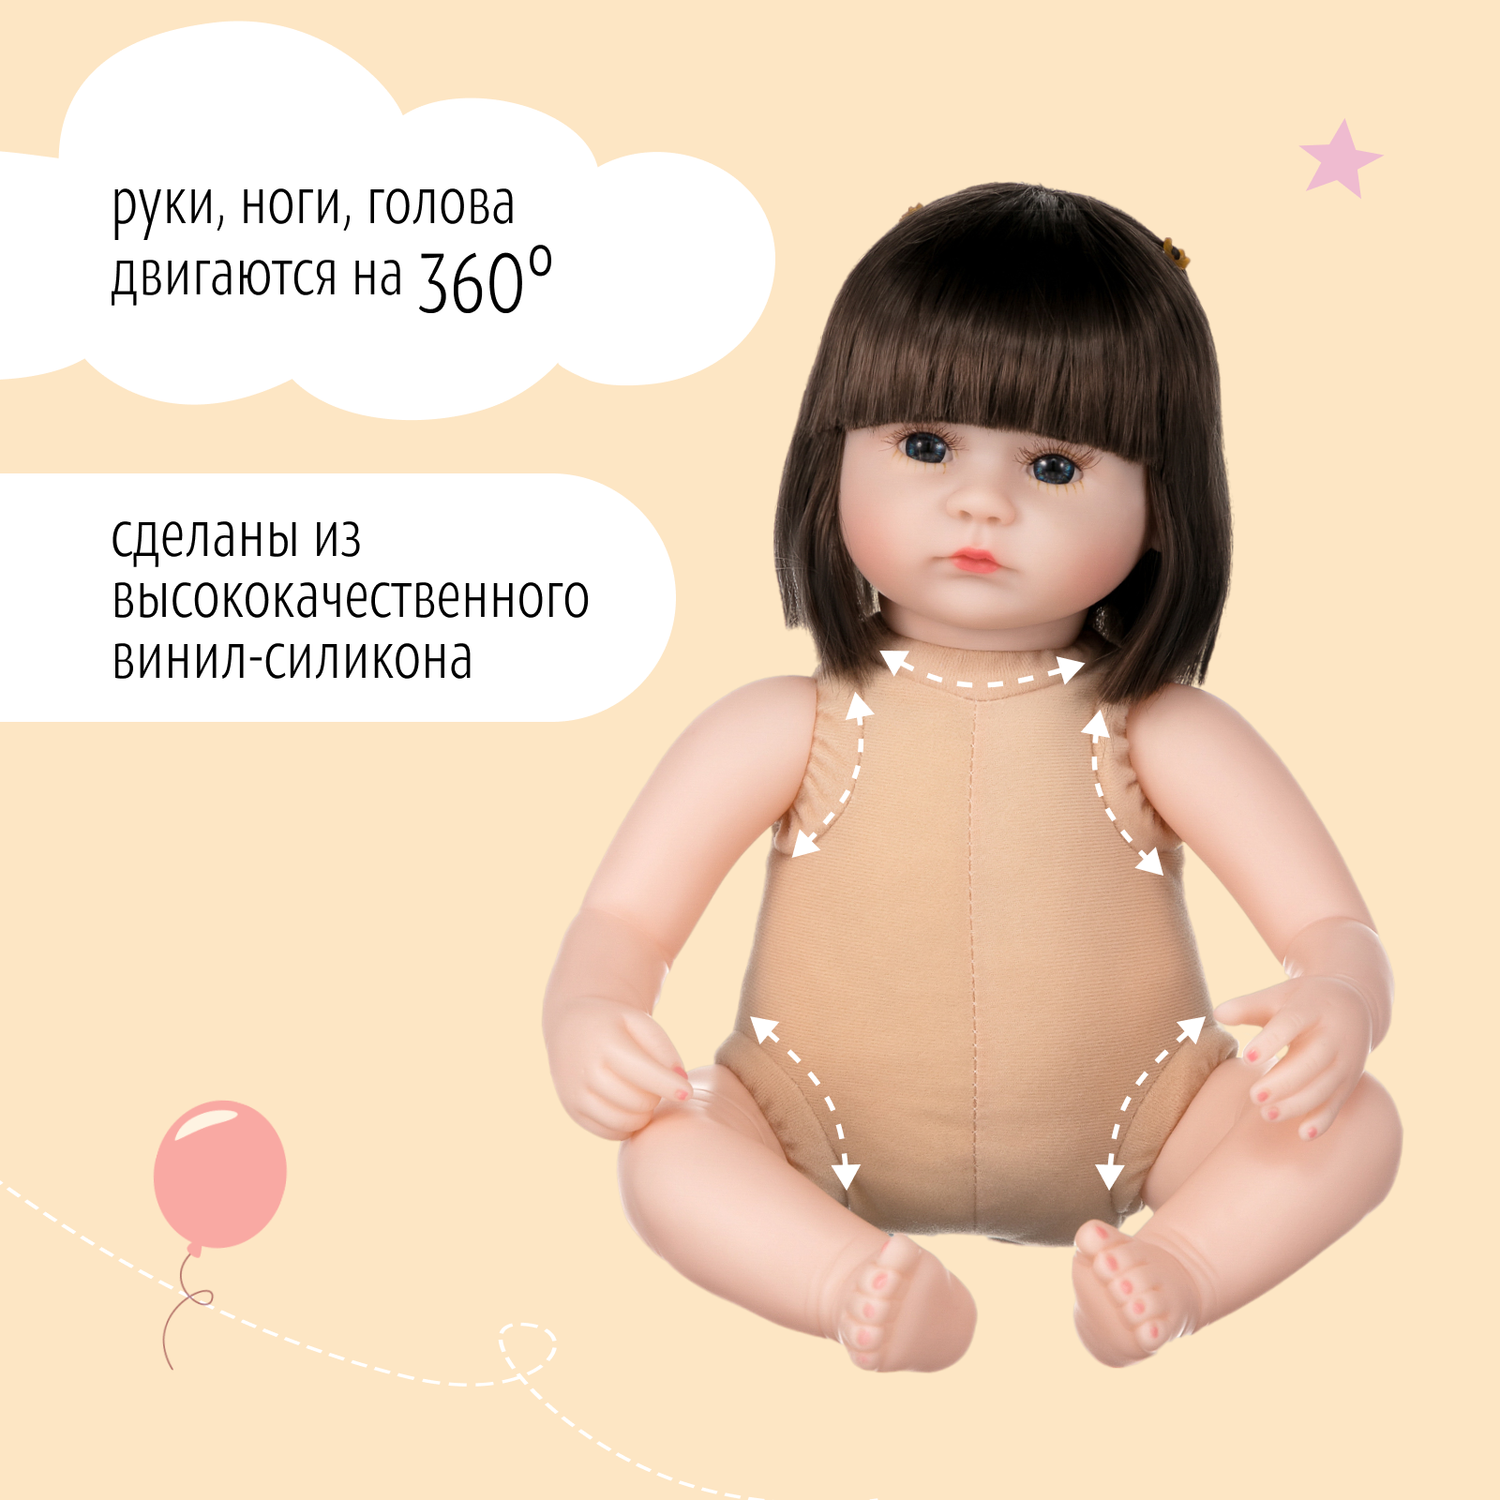 Кукла Реборн QA BABY Люба девочка большая пупс набор игрушки для девочки 42 см 45004 - фото 11